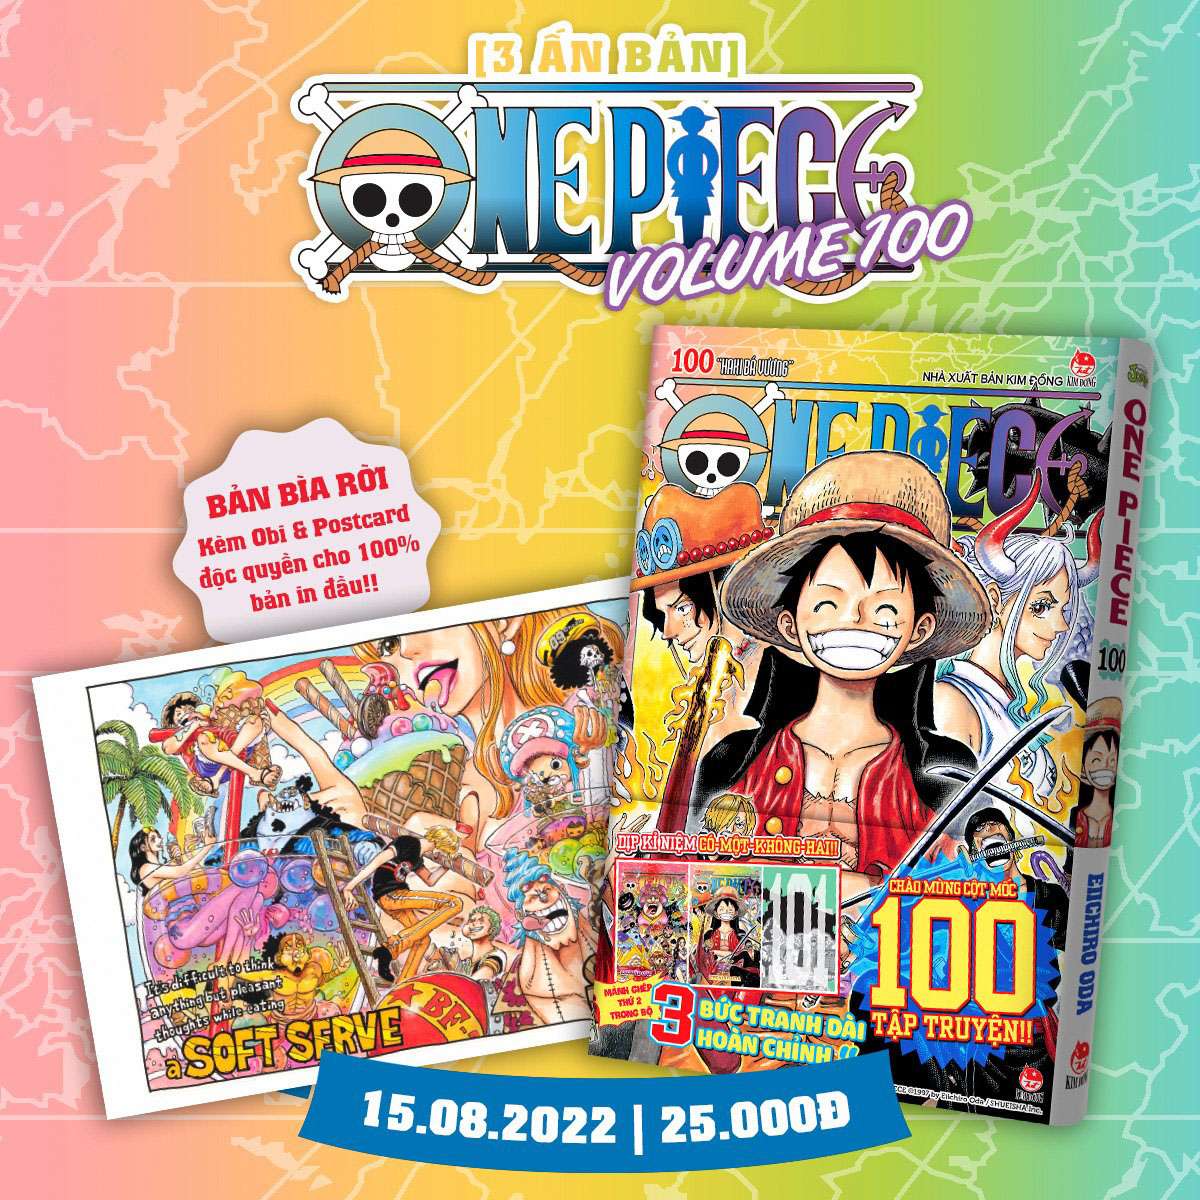 Truyện tranh - One Piece Tập 101 (Phiên bản giới hạn)